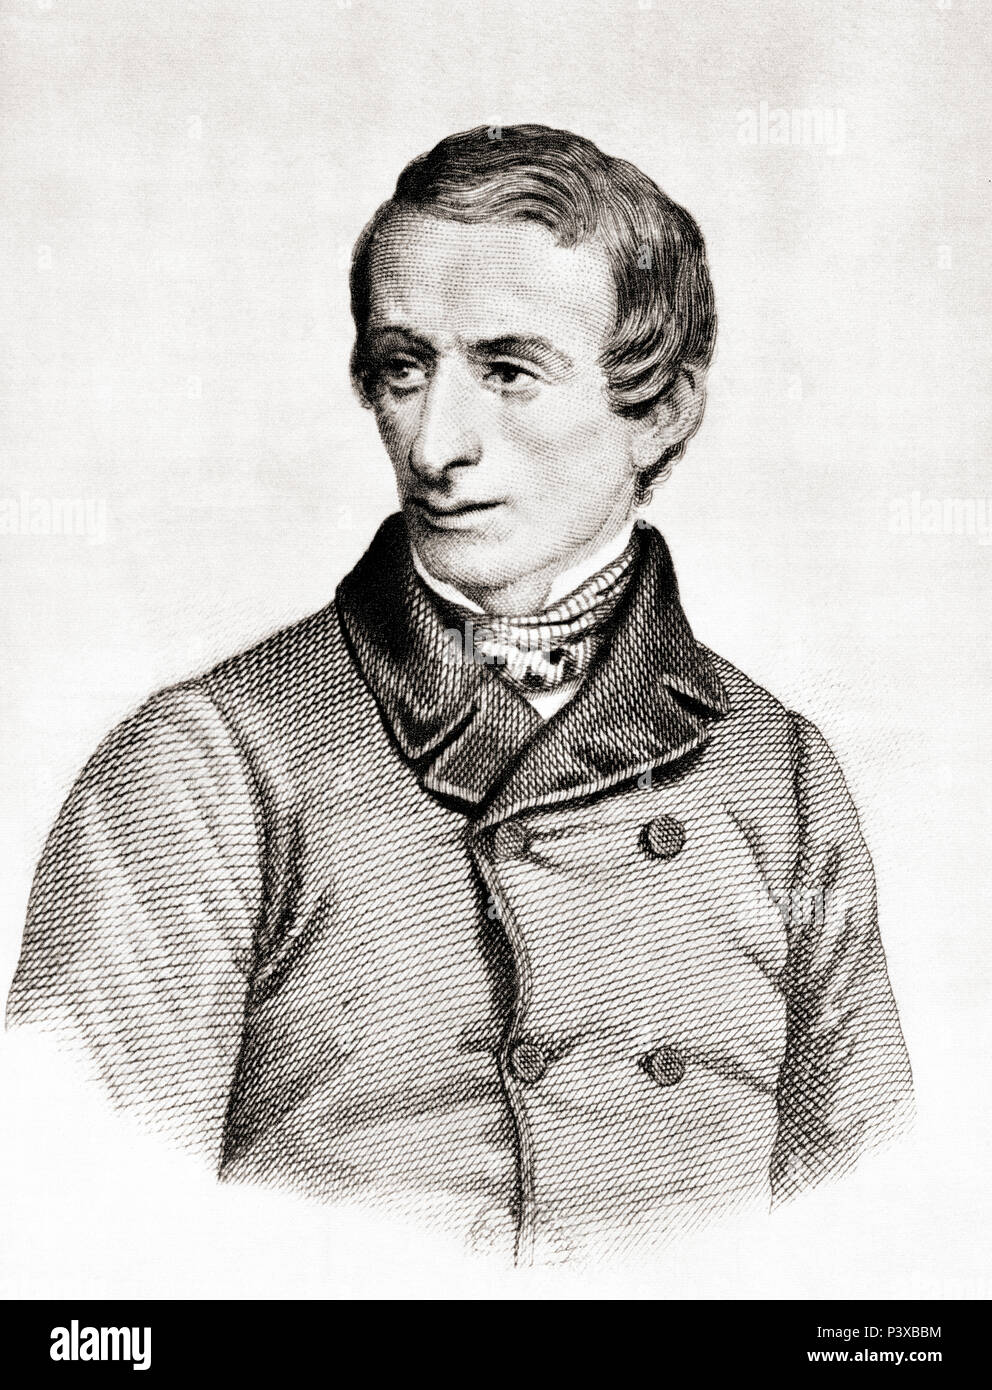 Giacomo Taldegardo Francesco di Sales Saverio Pietro Leopardi, 1798 - 1837. Italienischen Philosophen, Dichter, Essayist und Philologe. Nach einer zeitgenössischen Print. Stockfoto